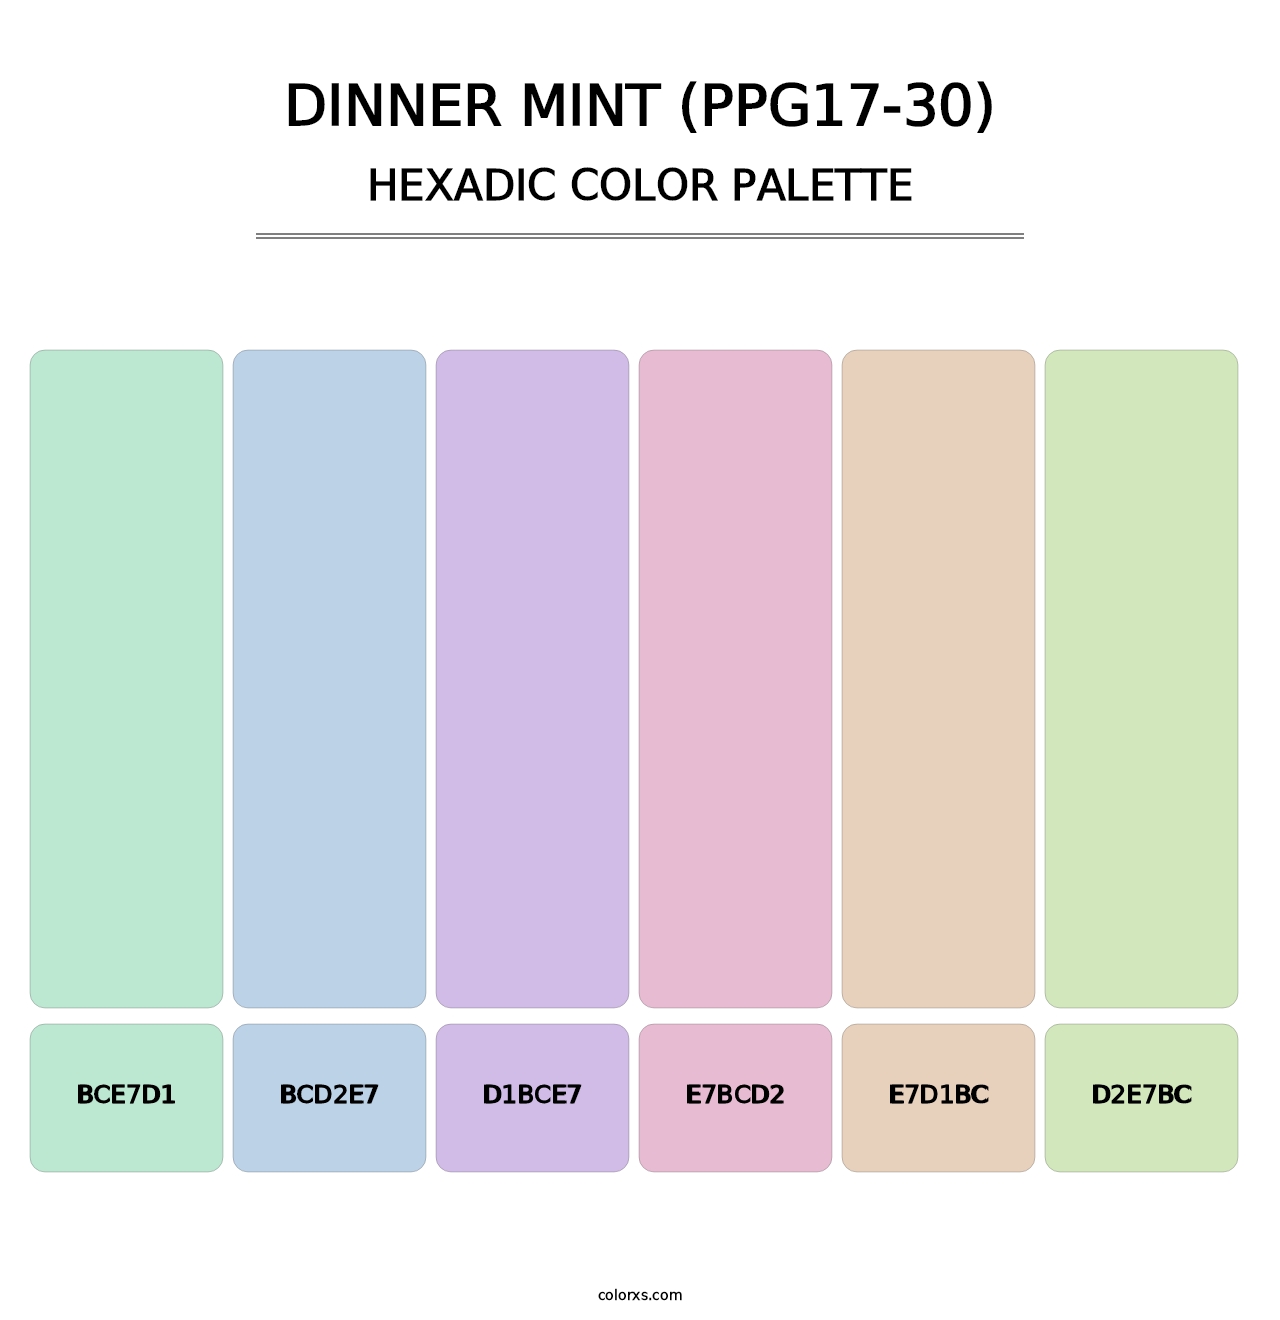 Dinner Mint (PPG17-30) - Hexadic Color Palette